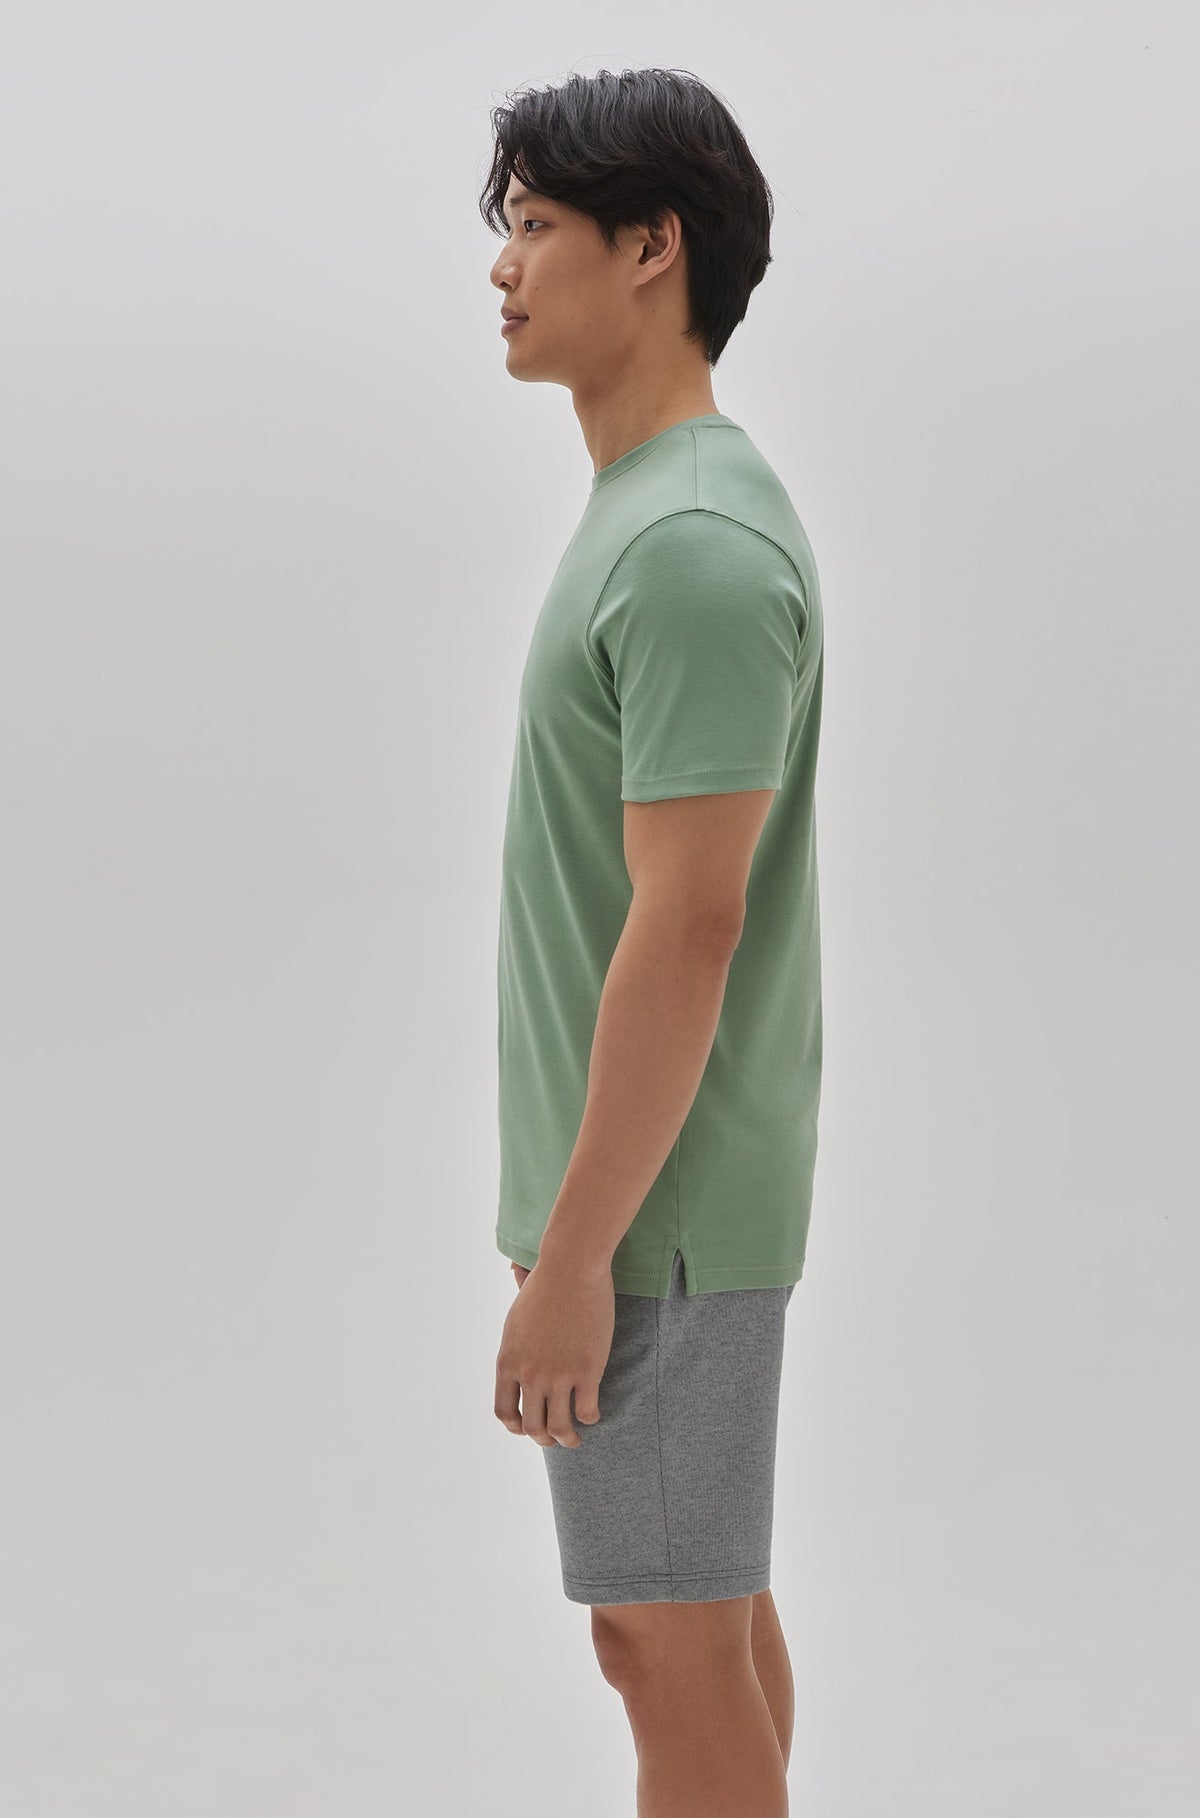 T-Shirt col rond pour homme par Robert Barakett | 23336/Georgia Baie Verte/Green Bay| Boutique Vvög, vêtements mode pour homme et femme